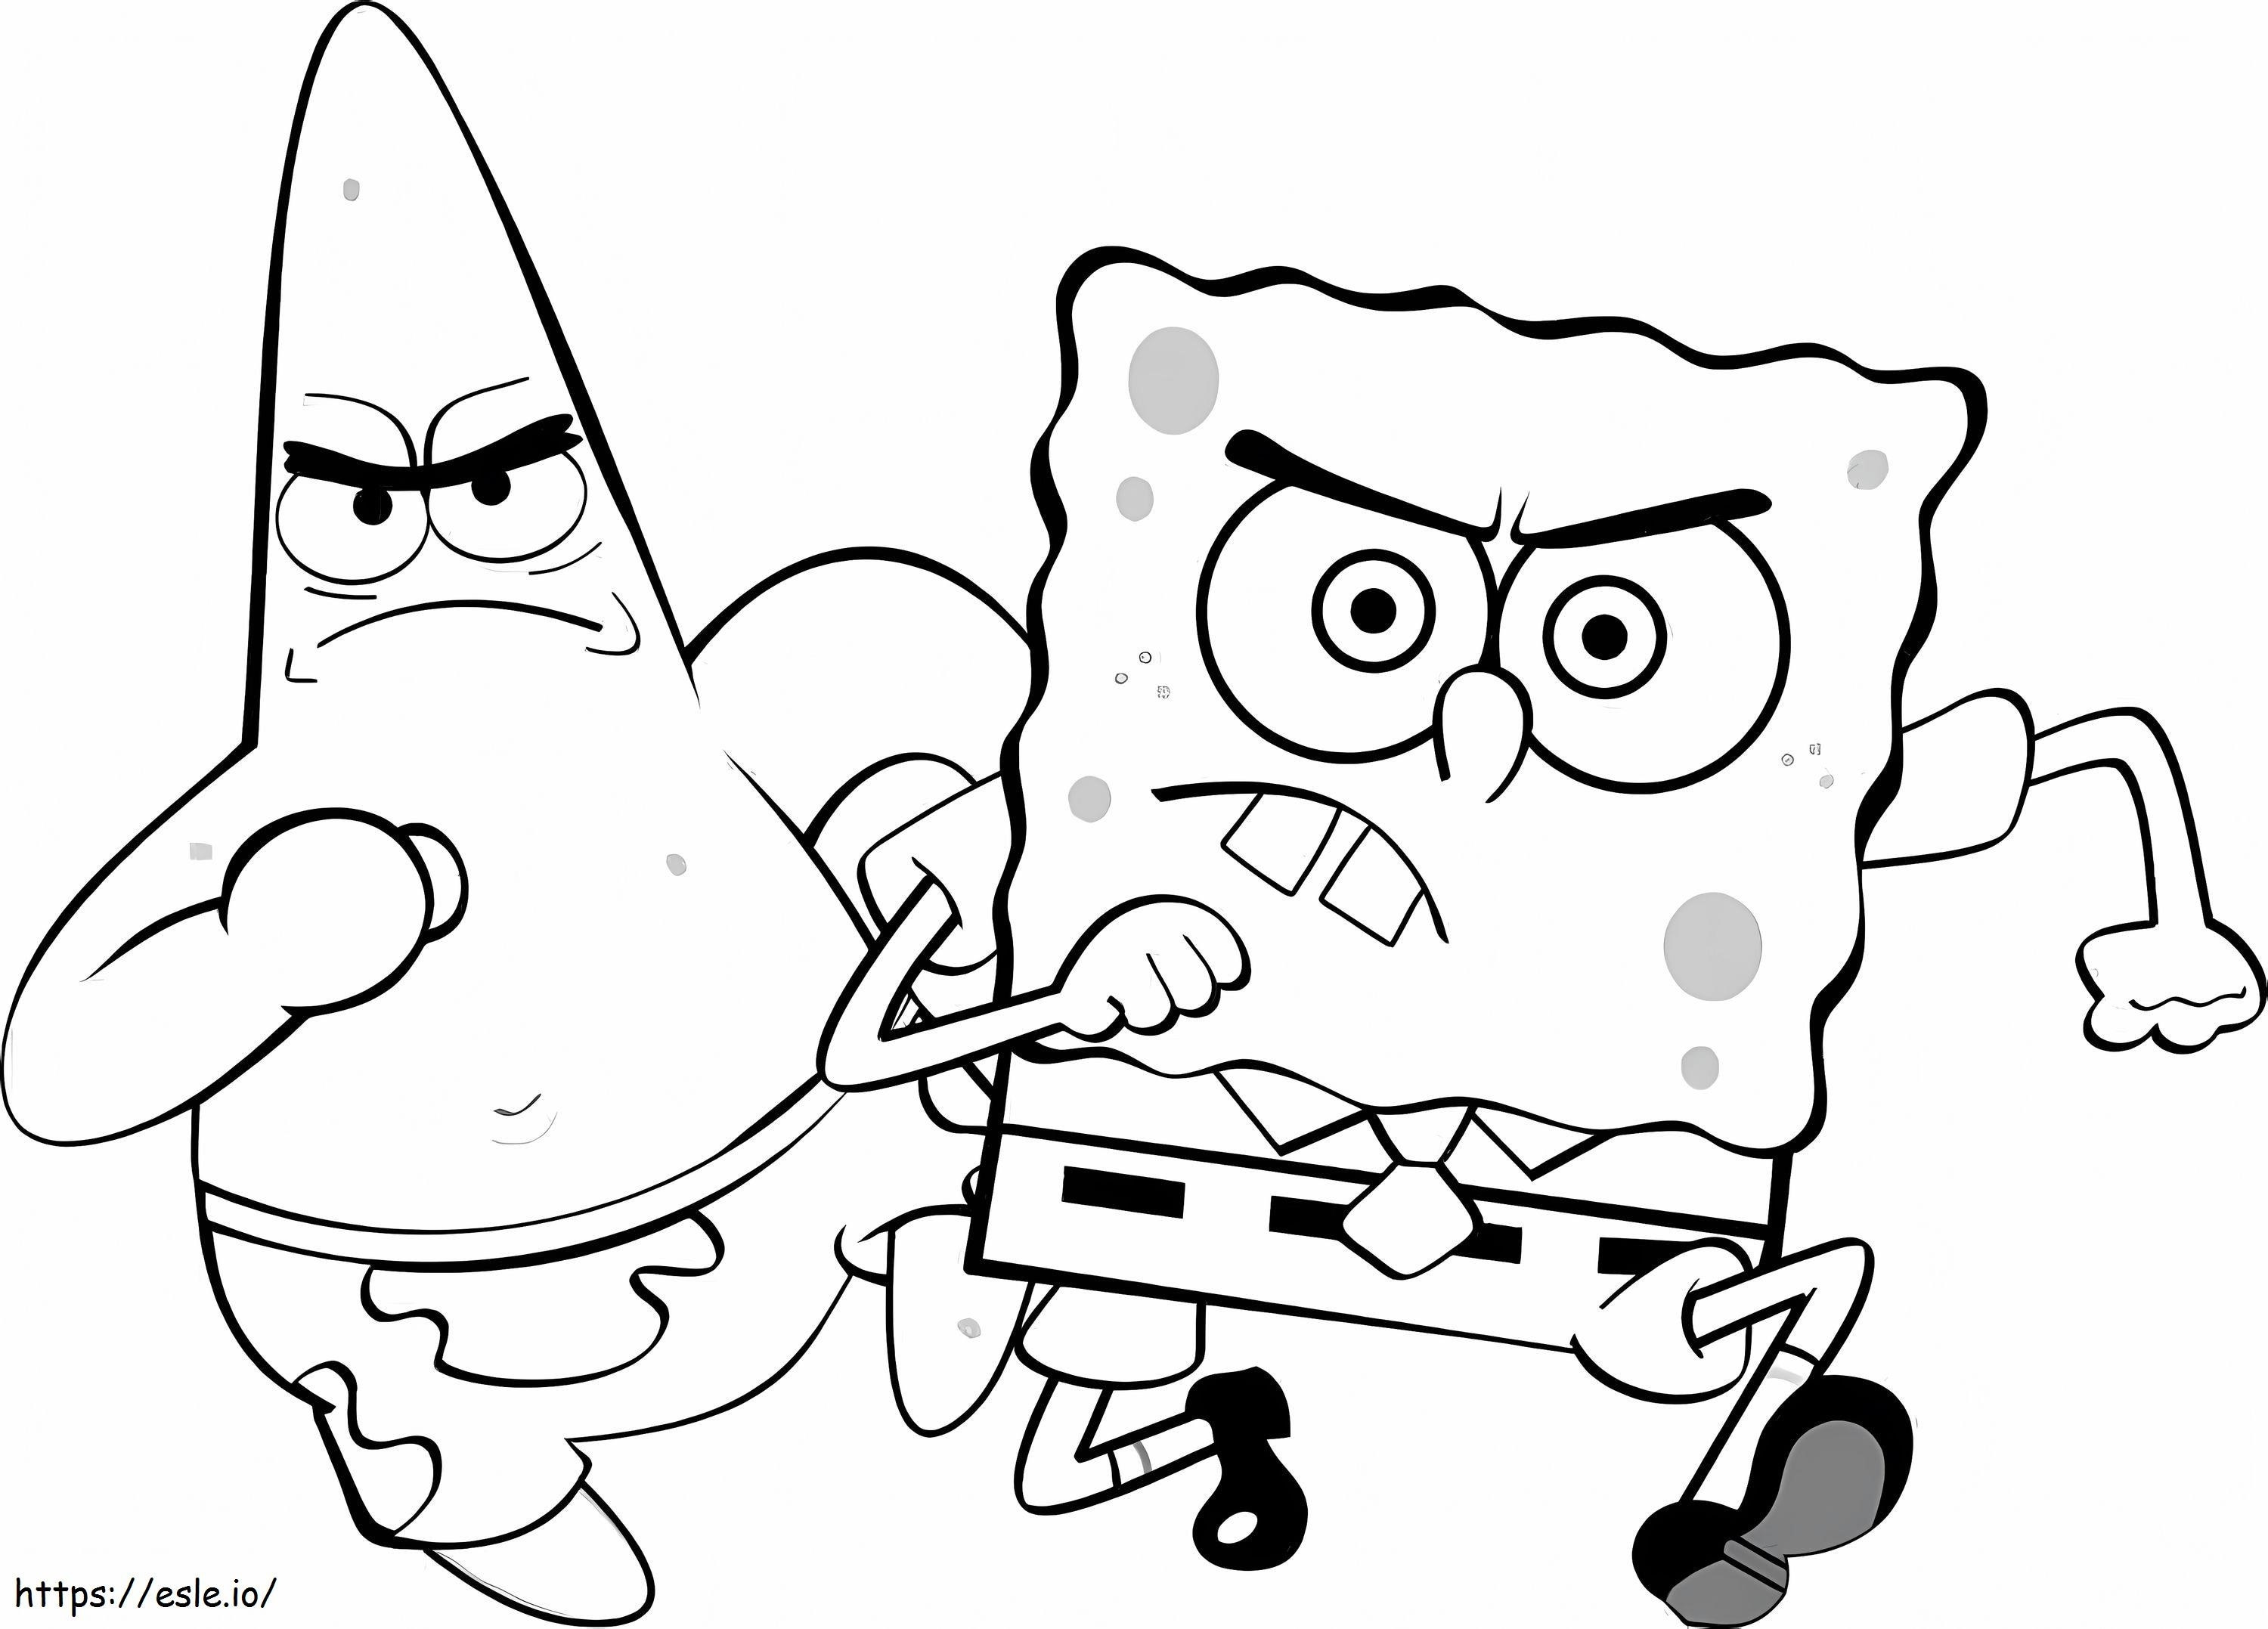 Patrick Star e Spongebob in esecuzione da colorare